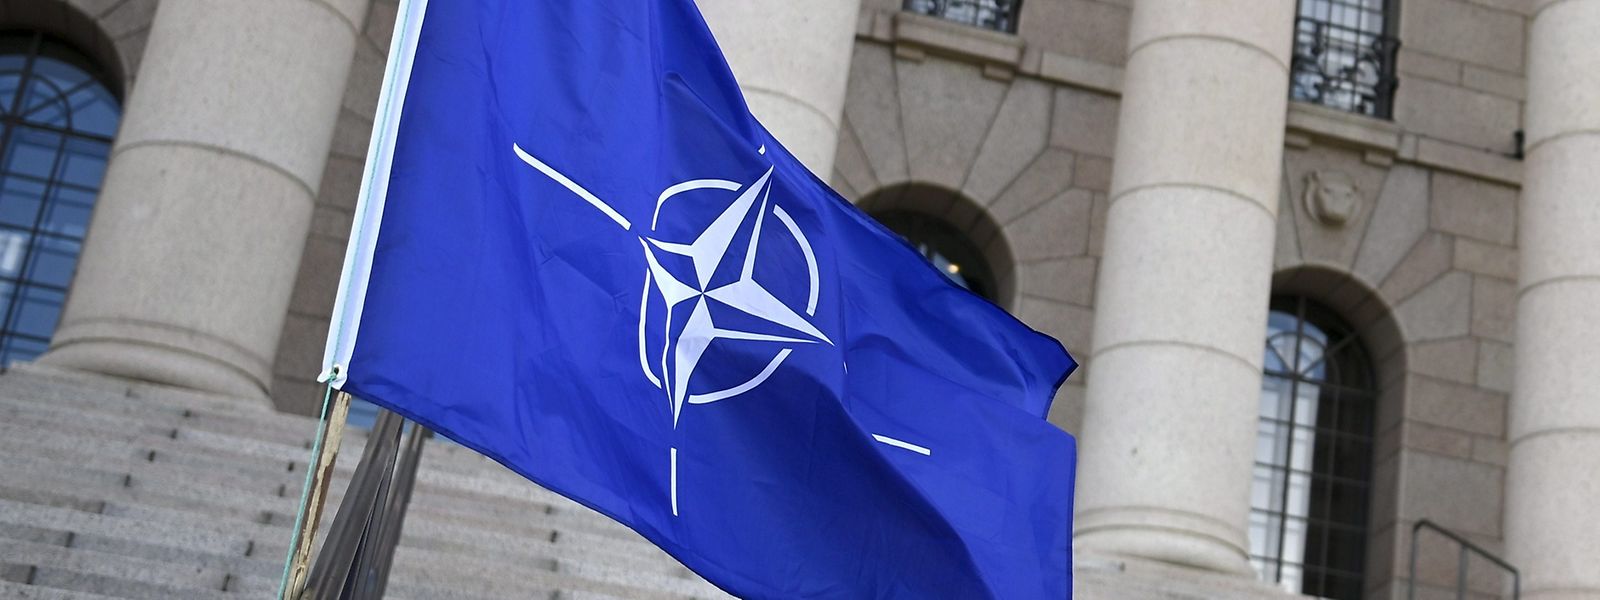 Die noch in jüngster Vergangenheit als „hirntot“ bezeichnete NATO erfährt durch den Ukraine-Krieg eine neue Daseinsberechtigung.